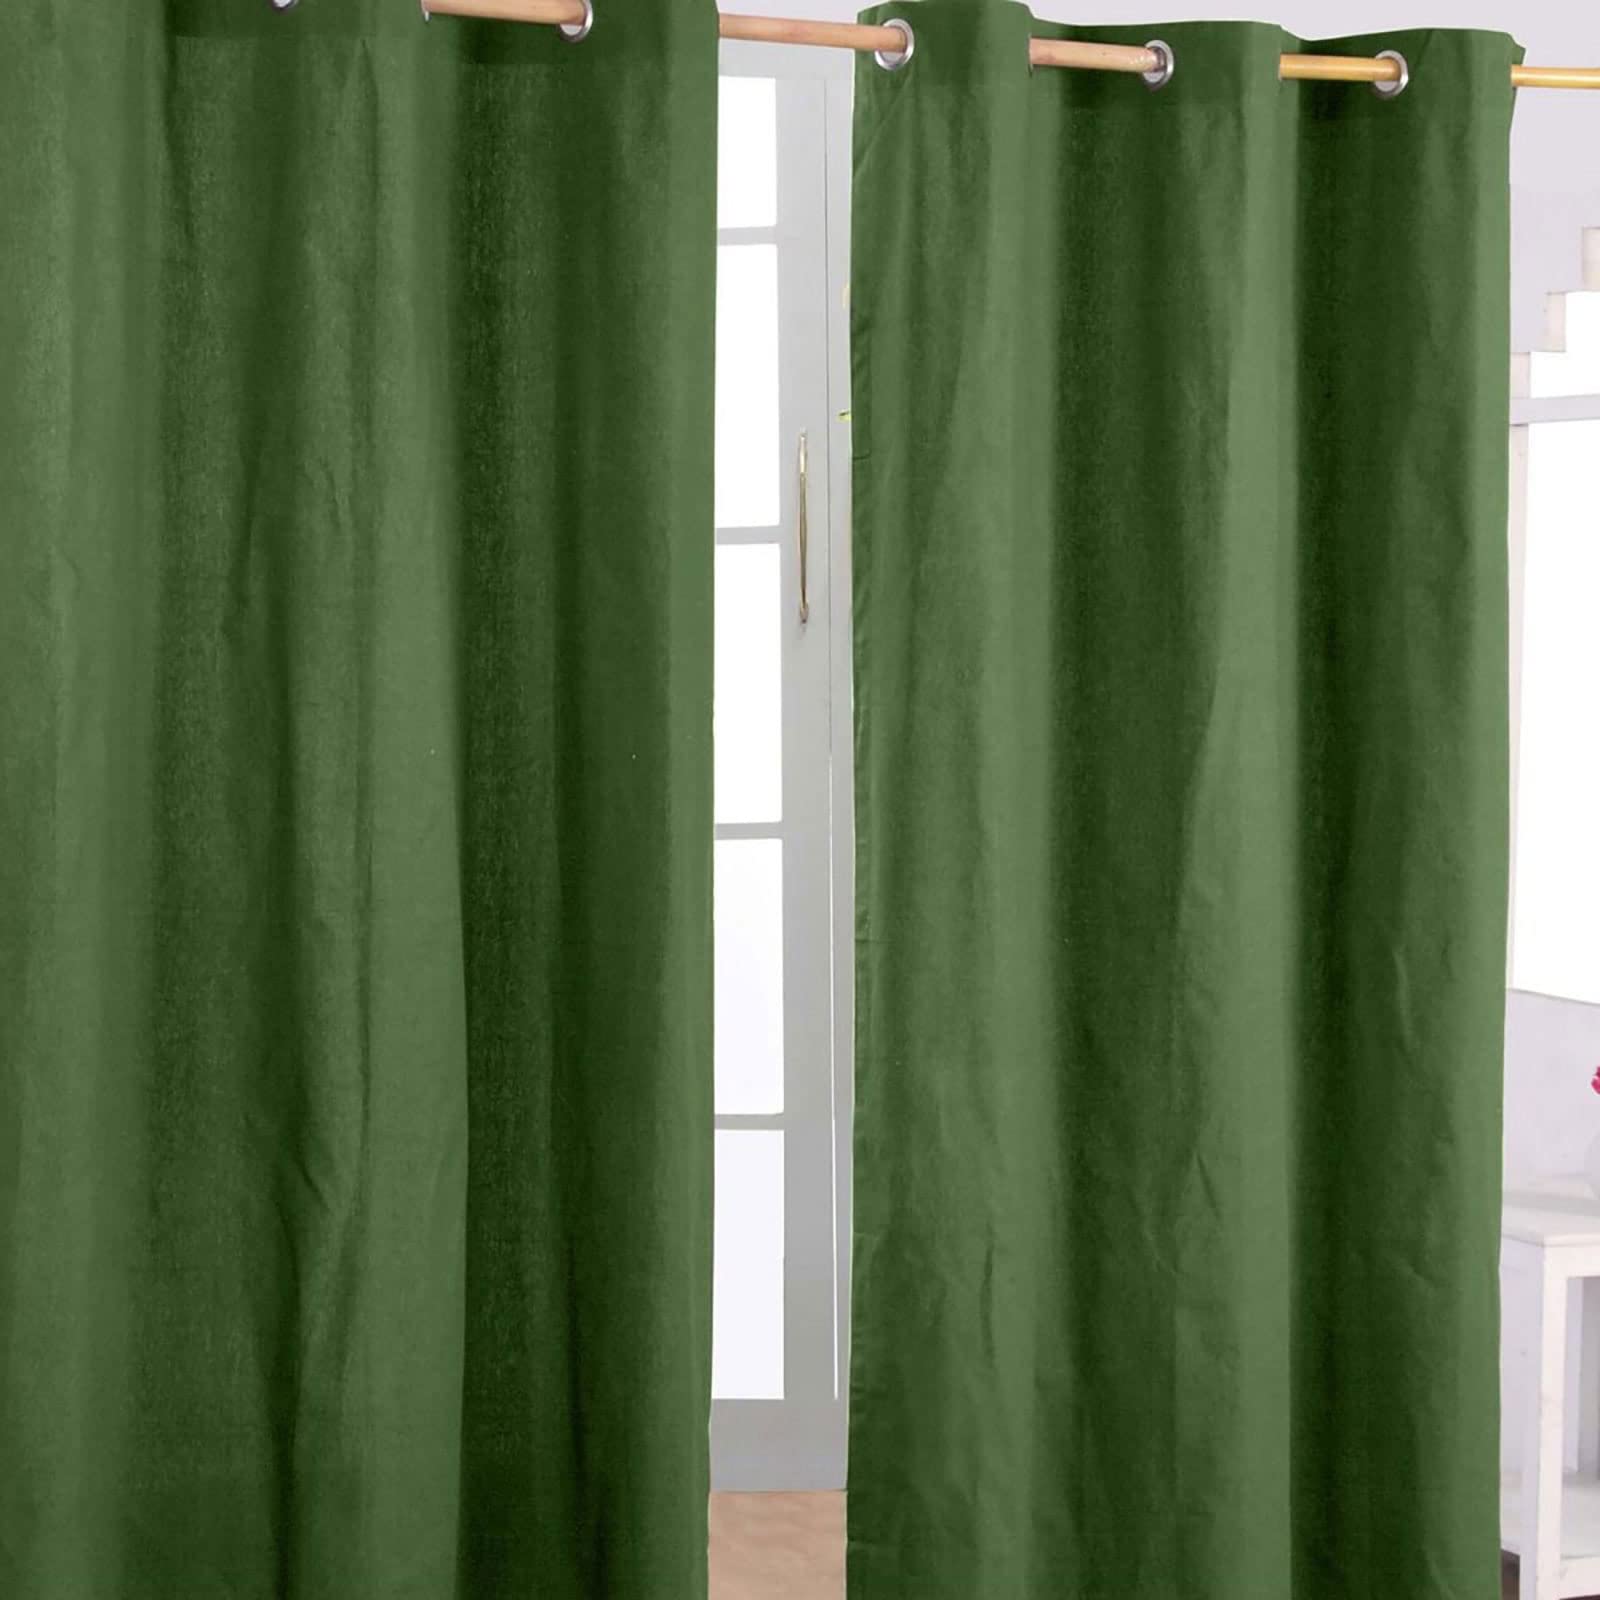 Homescapes 2er Set eifarbige Ösen Gardinen je B117 x L137 cm aus 100% Baumwolle, blickdichte Vorhänge/Dekoschals/Ösenvorhänge für Wohnzimmer oder Küche, olivgrün